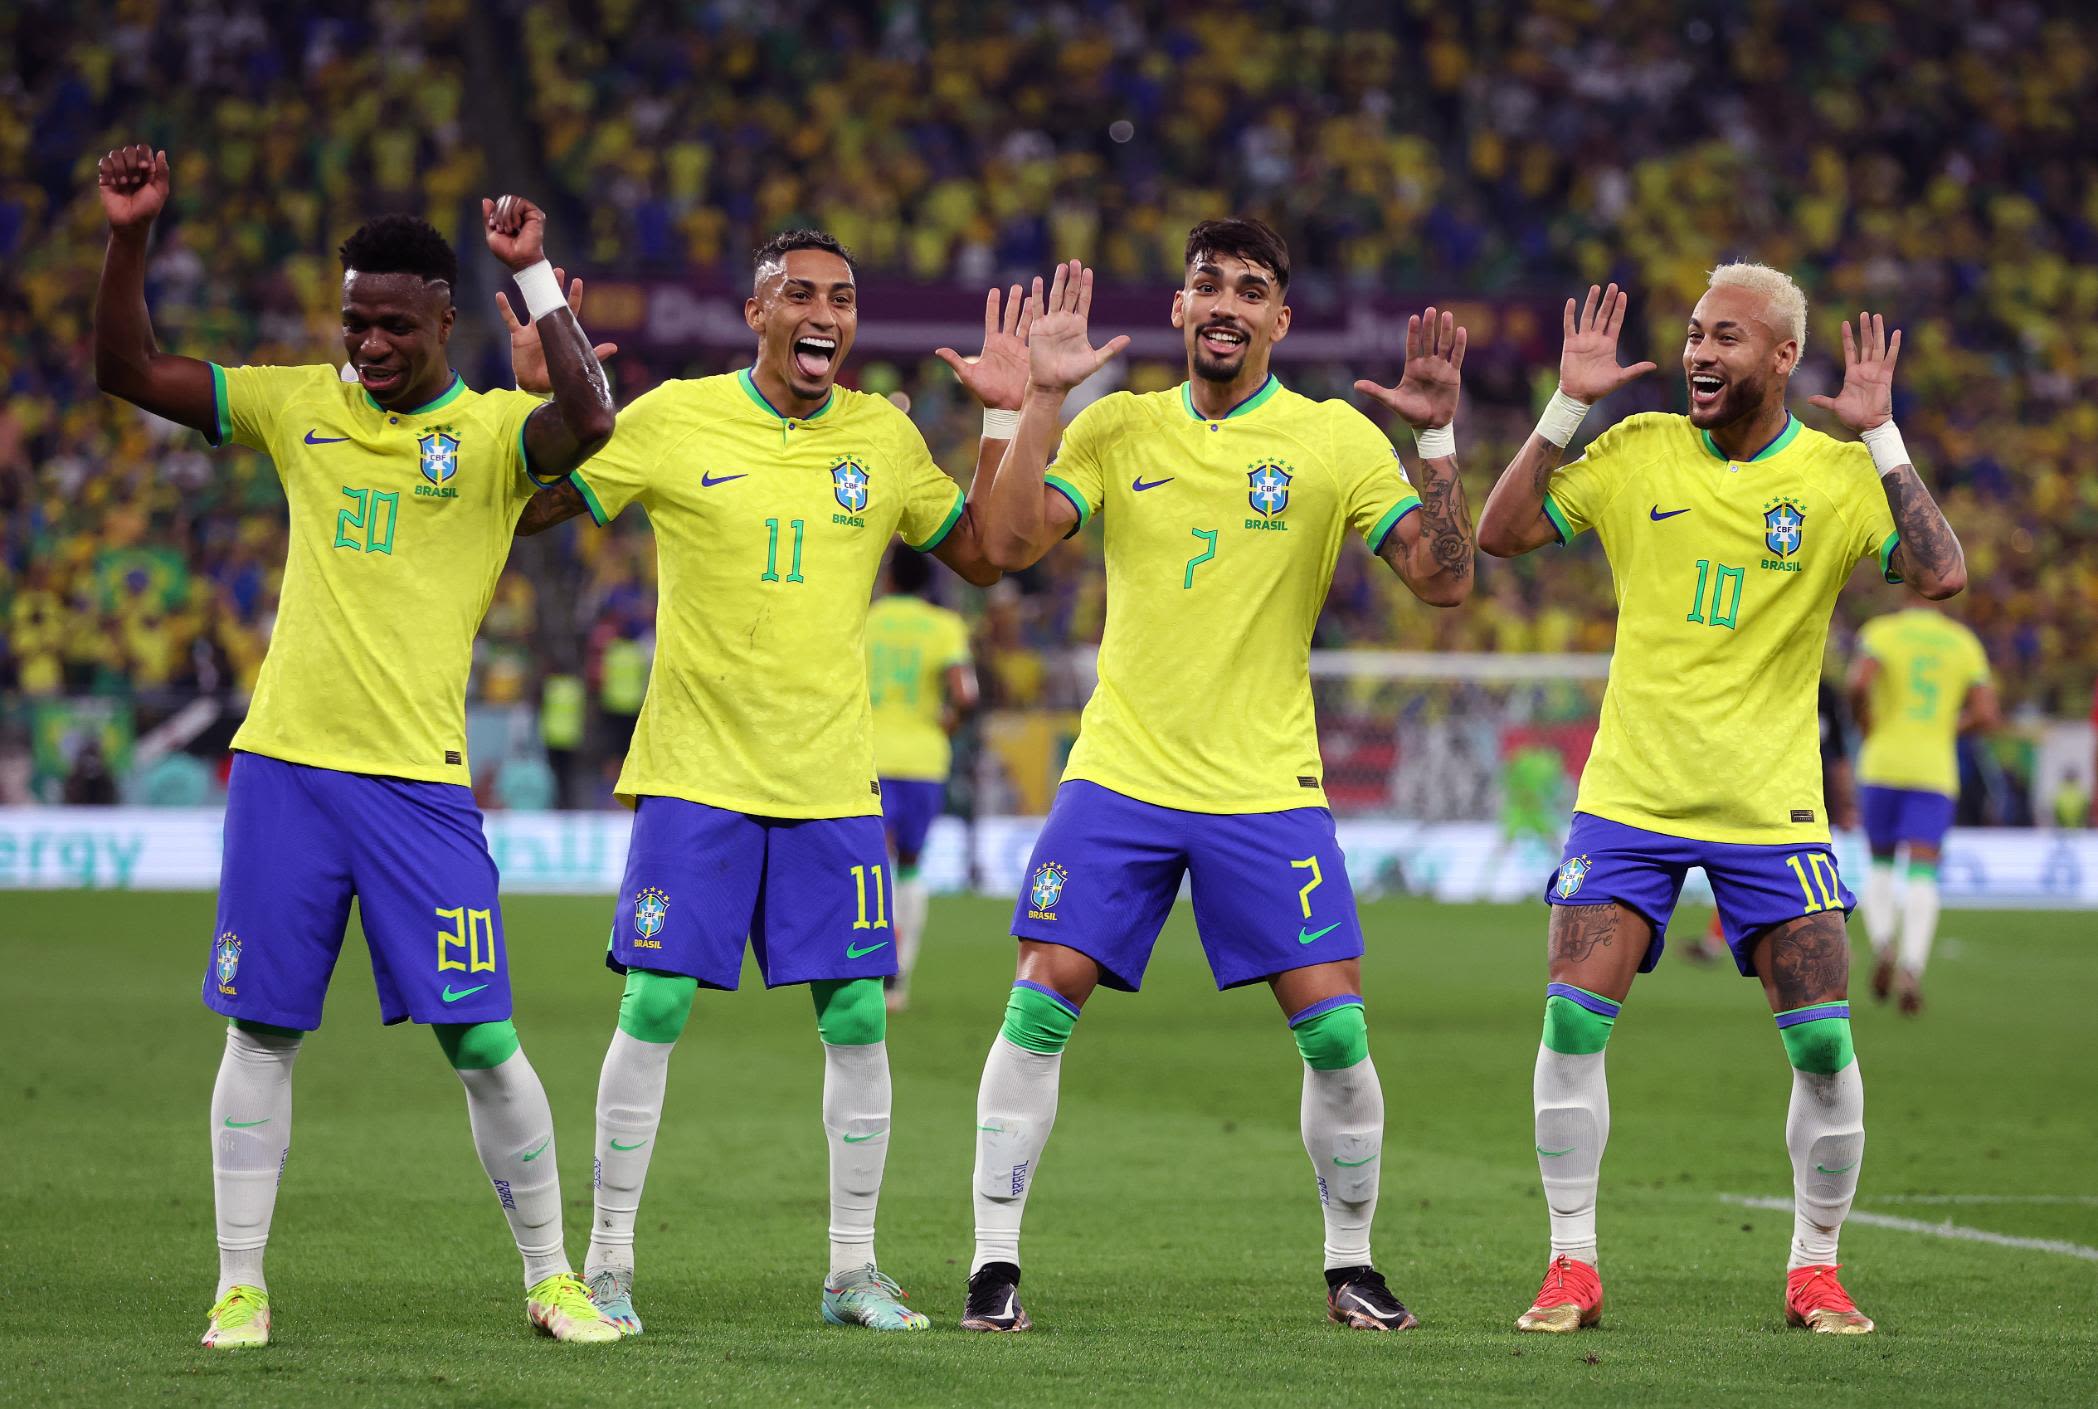 Đội tuyển Brazil là một trong những đội có sức mạnh hàng đầu thế giới